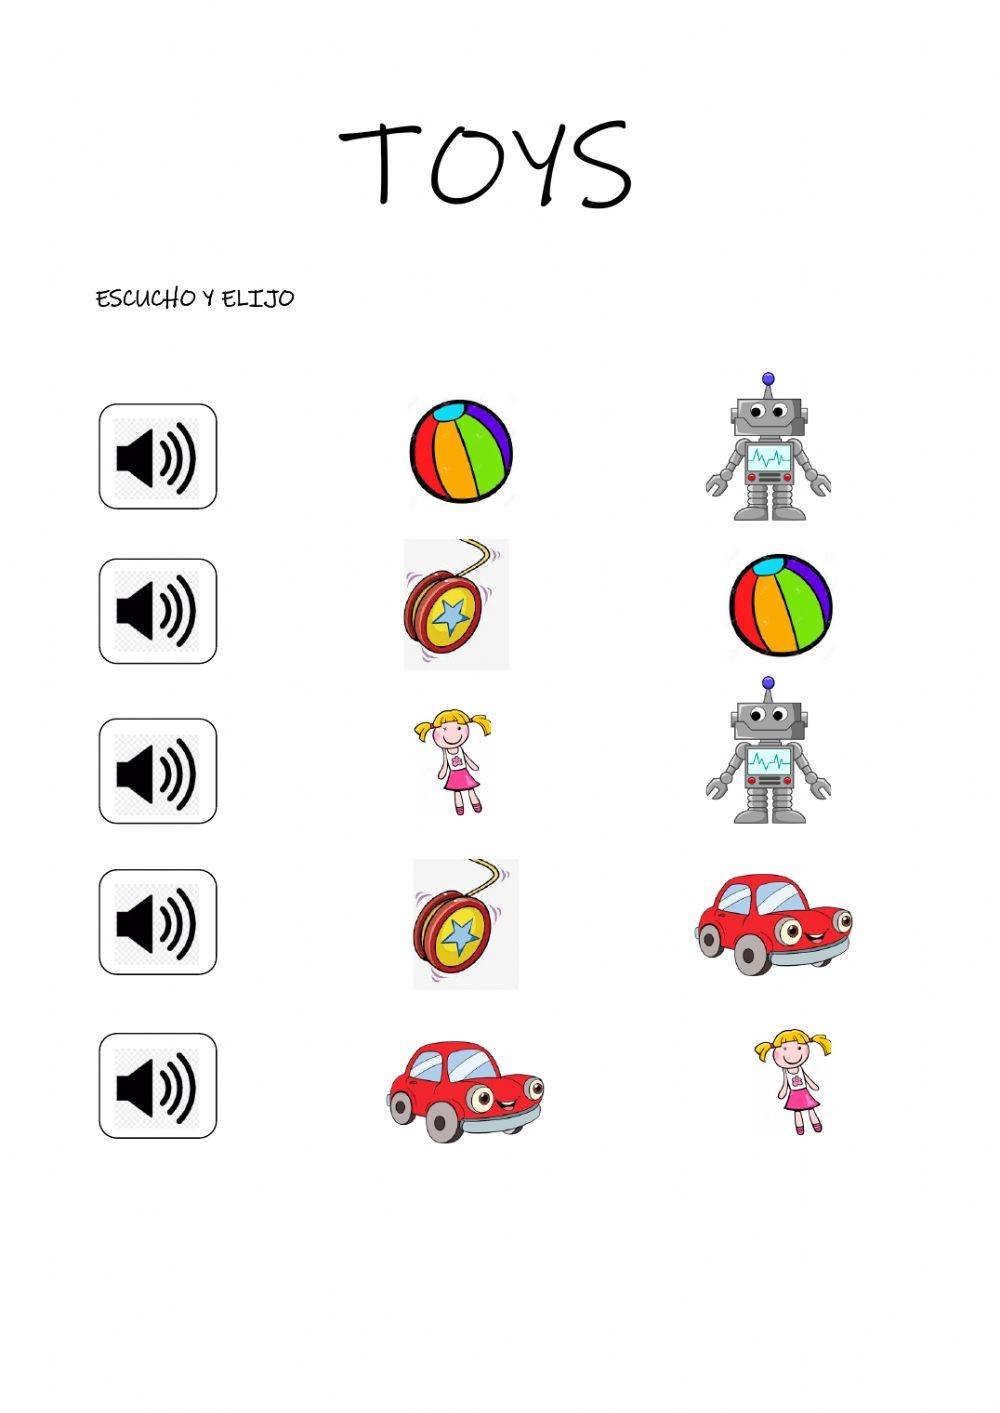 TOYS (robot, doll, ball, car, yo-yo)